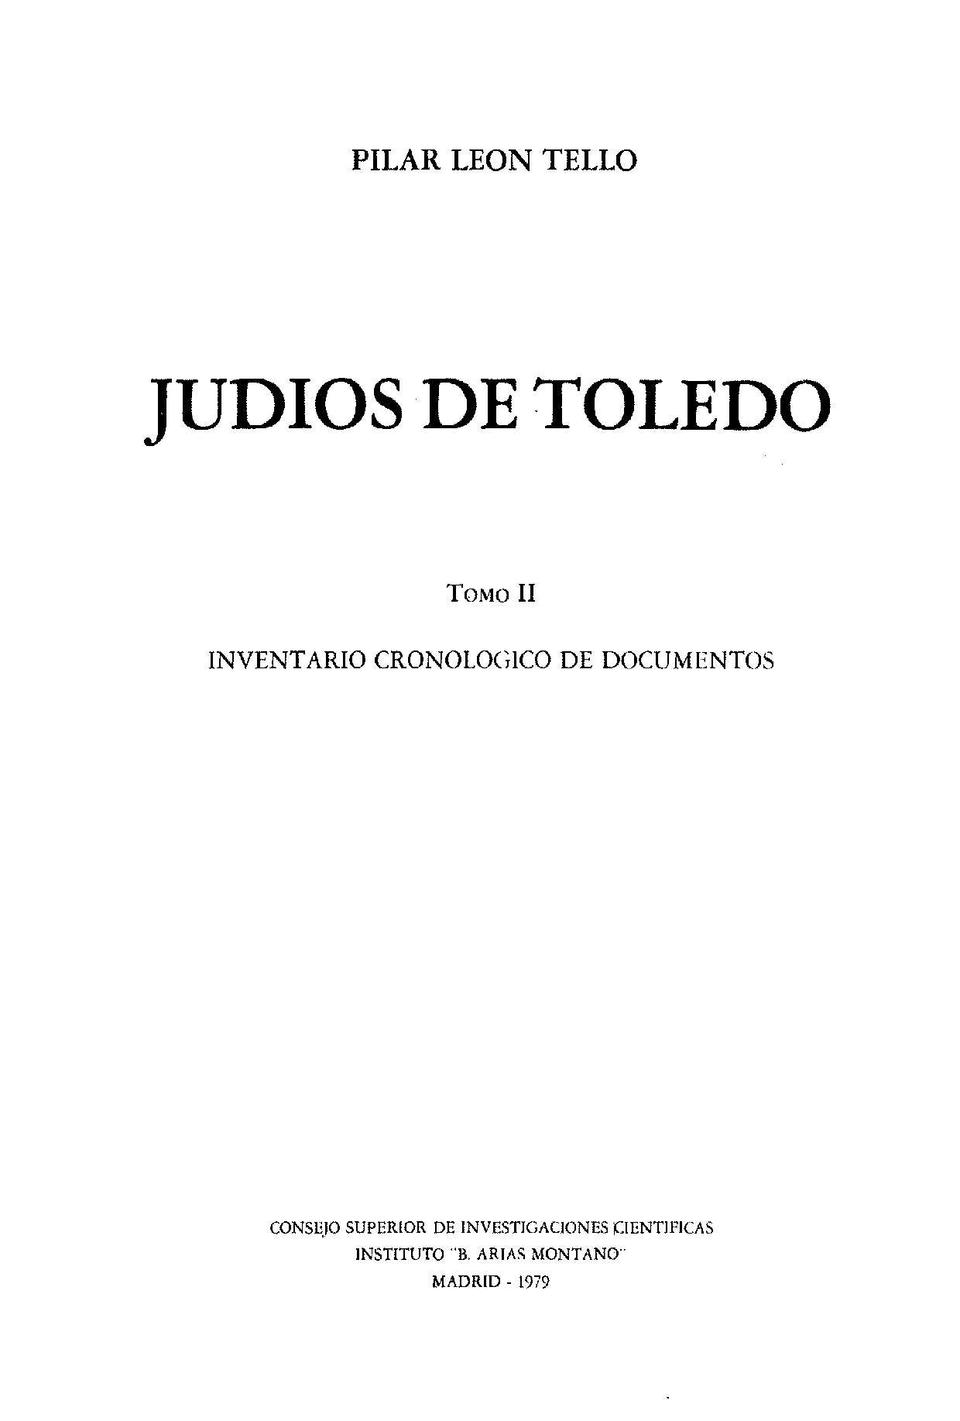 Judíos de Toledo. Tomo II. Inventario cronológico de documentos / Pilar León Tello.-. [Monografía]